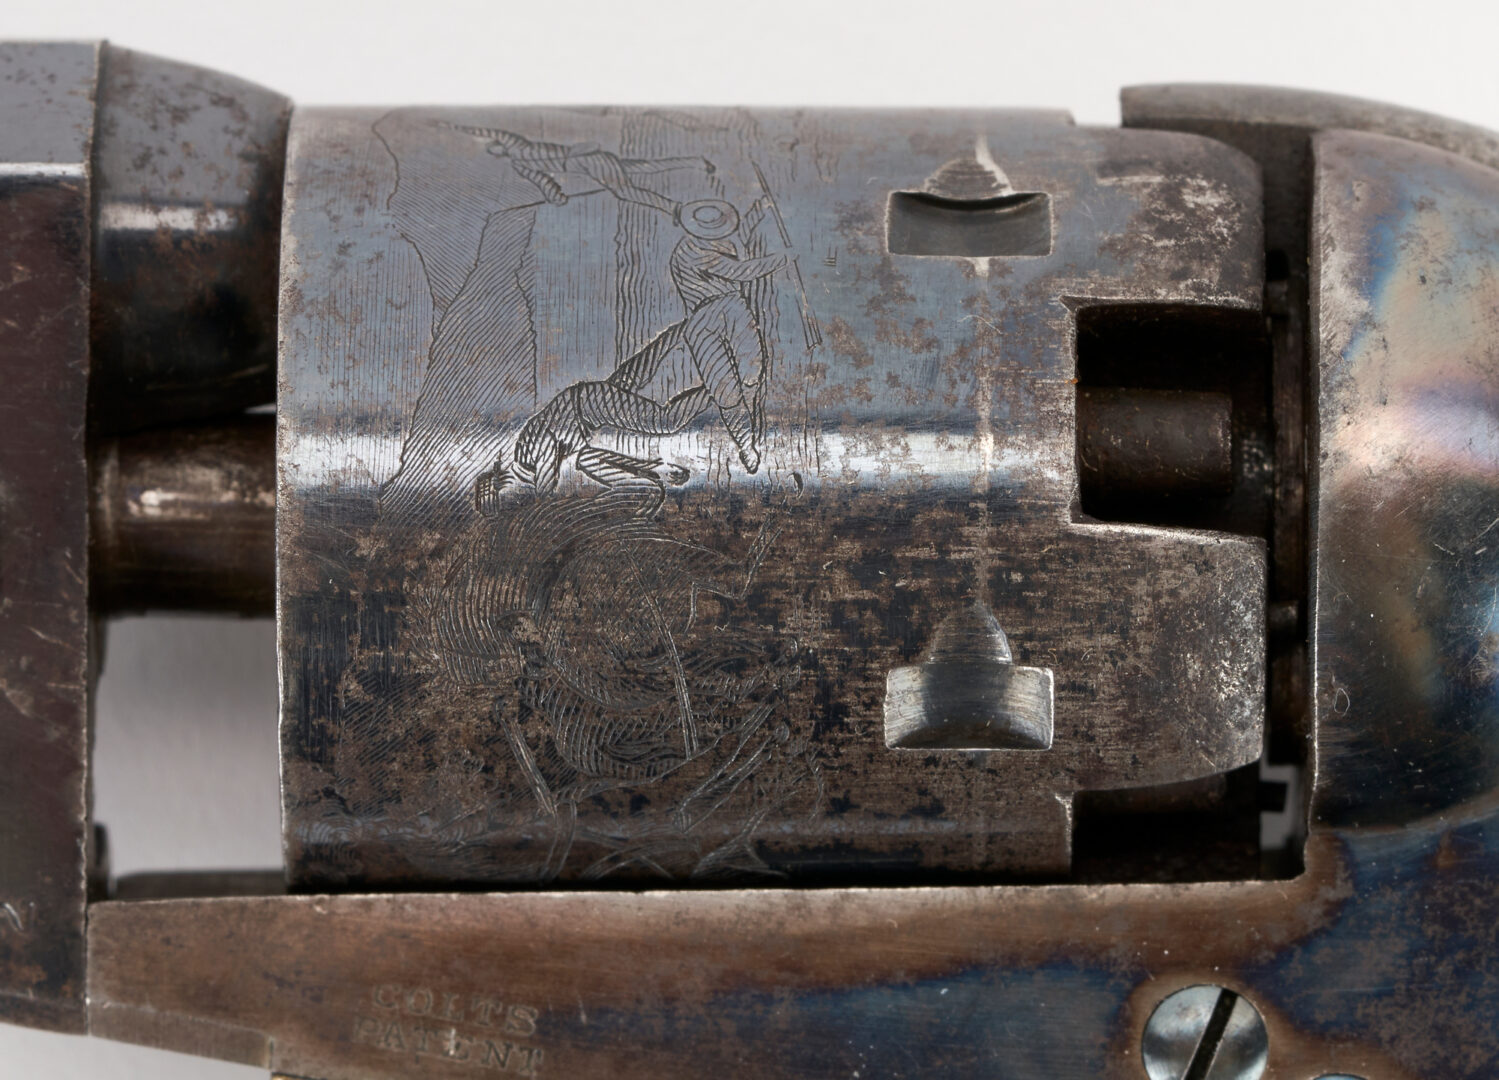 Lot 675: Civil War Colt 1849 Pocket Revolver, .31 cal., 2 items